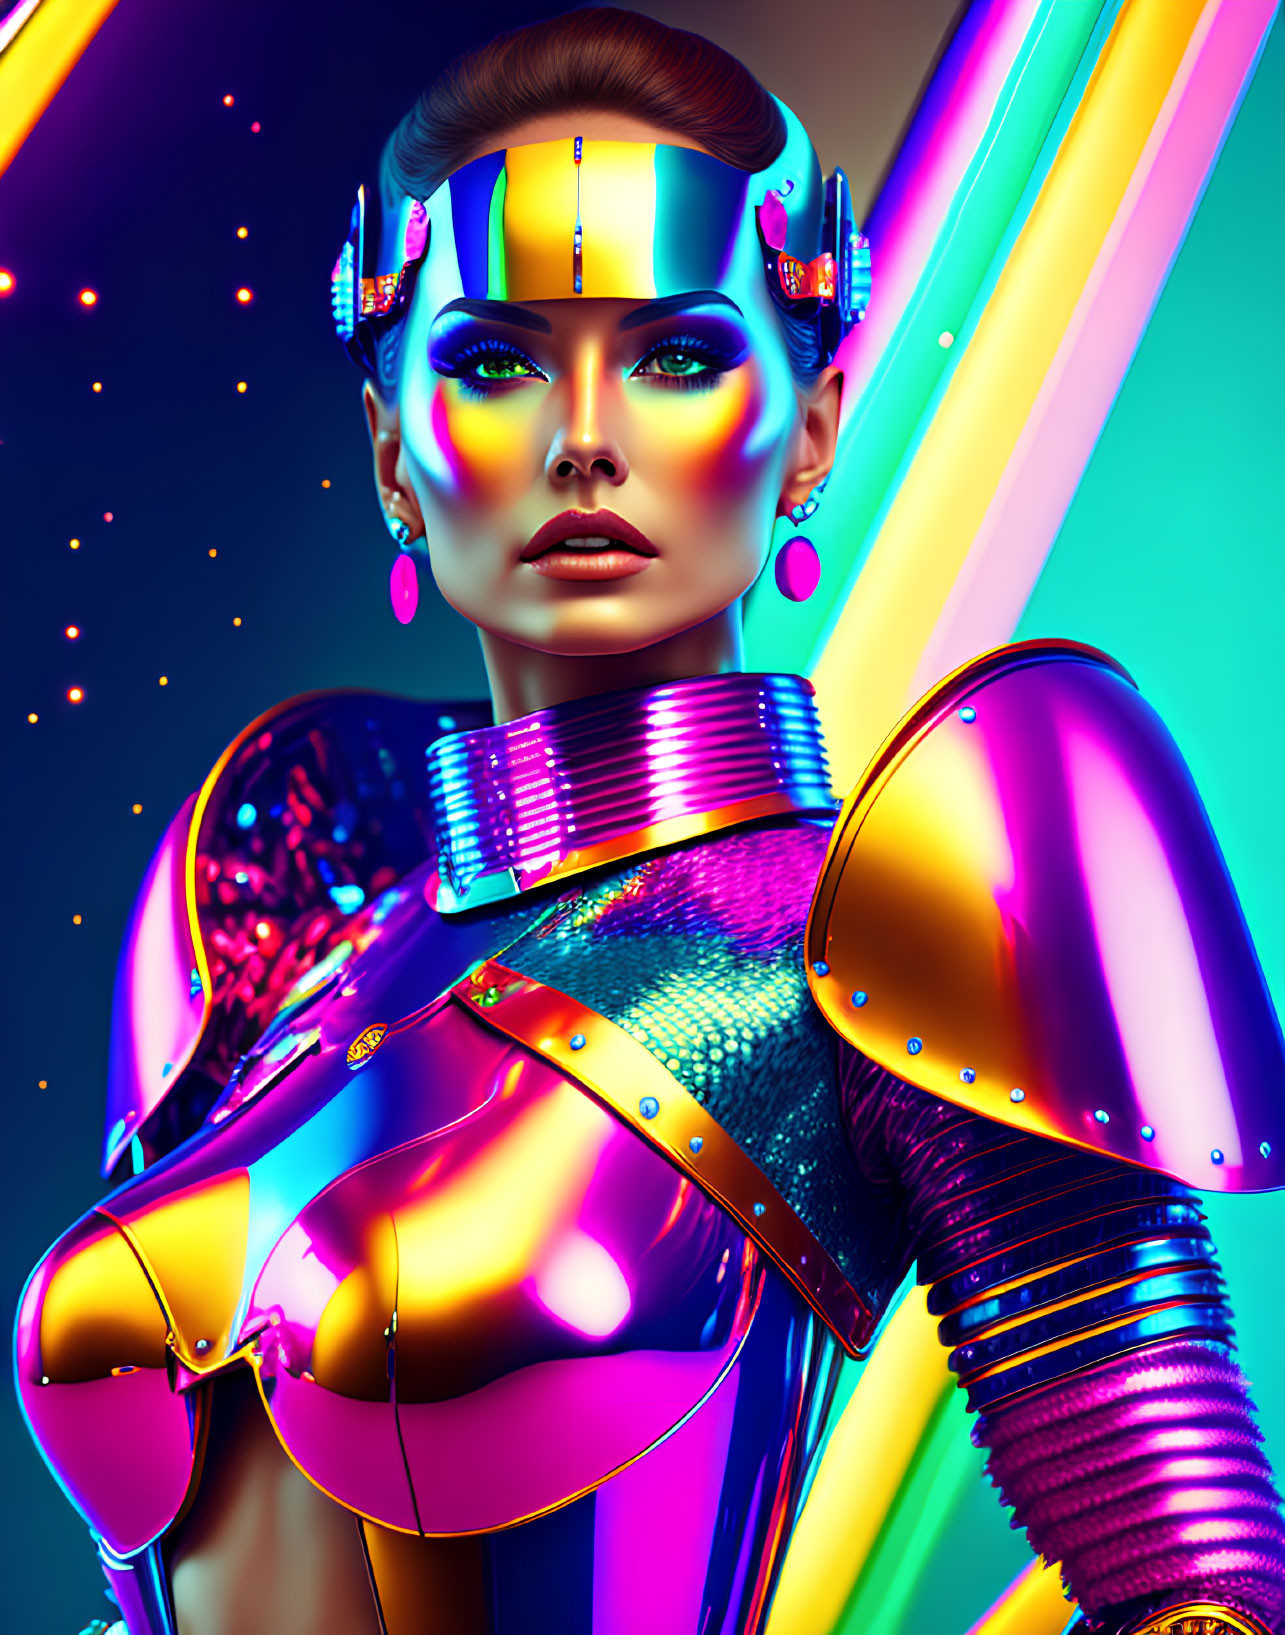 Colorful armor adorns vibrant female robot in futuristic setting